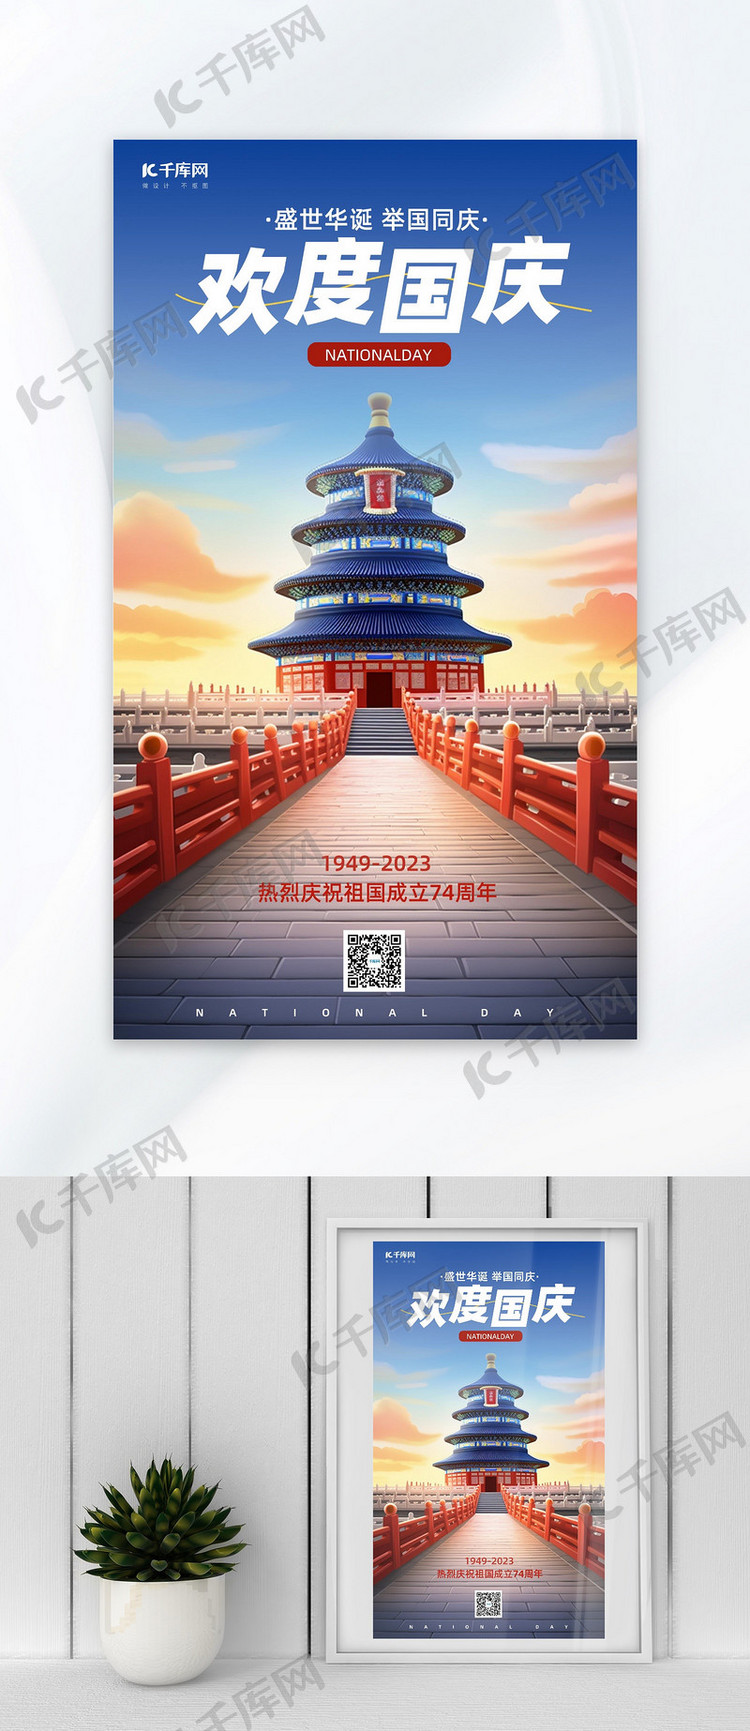 国庆节问候祝福蓝色AIGC营销广告宣传海报